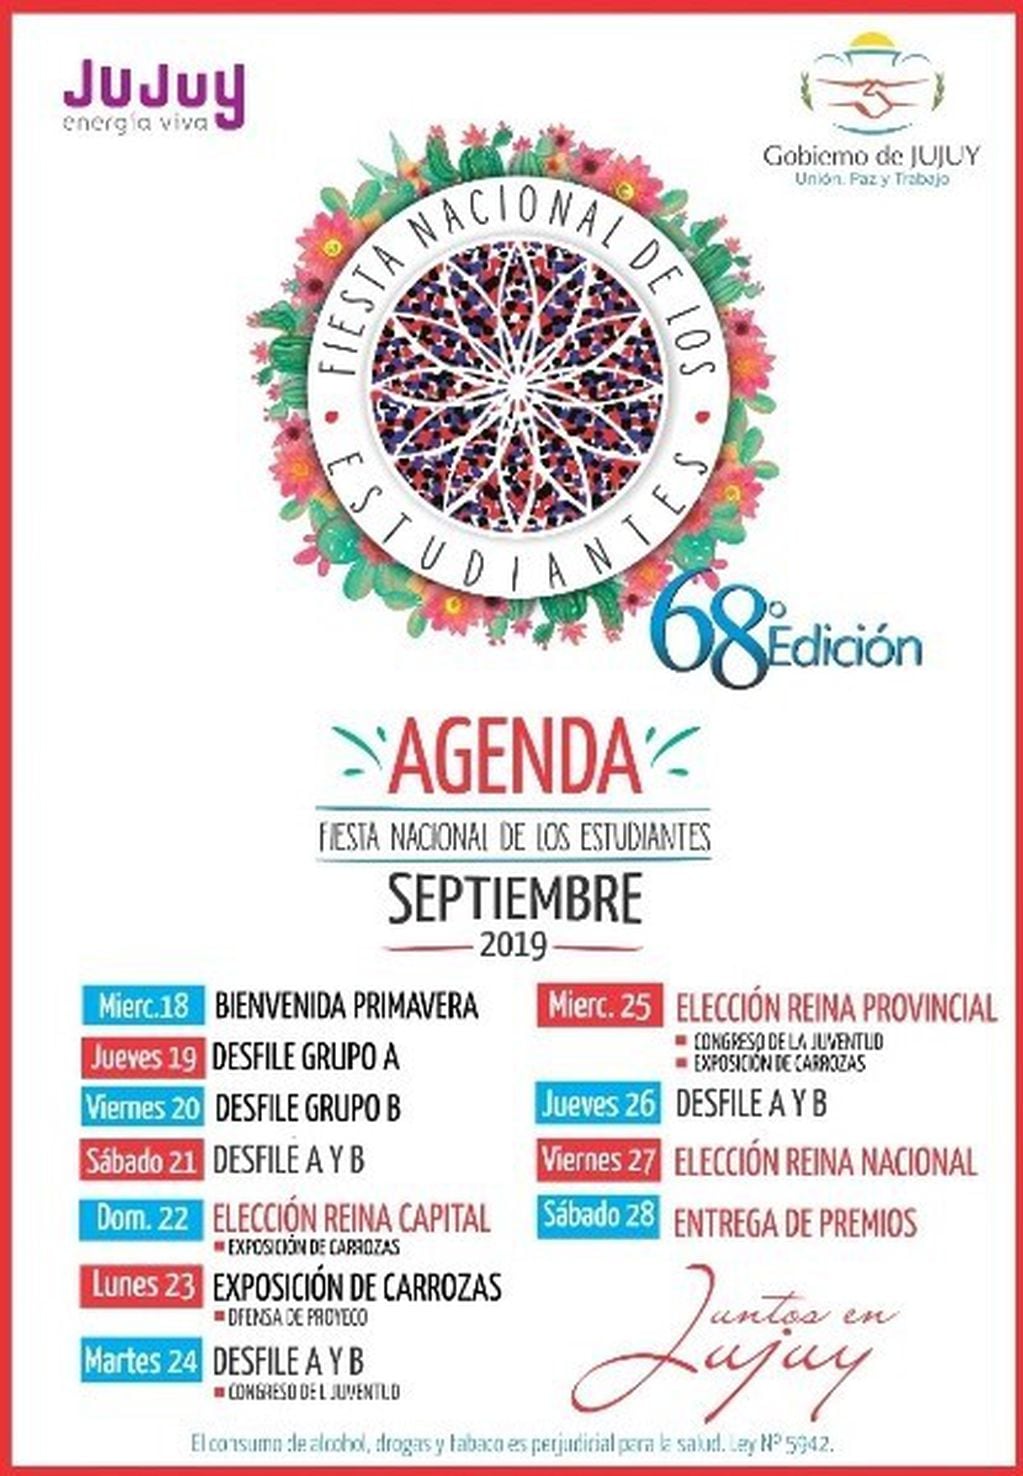 Calendario oficial de la Fiesta Nacional de los Estudiantes 2019, en Jujuy